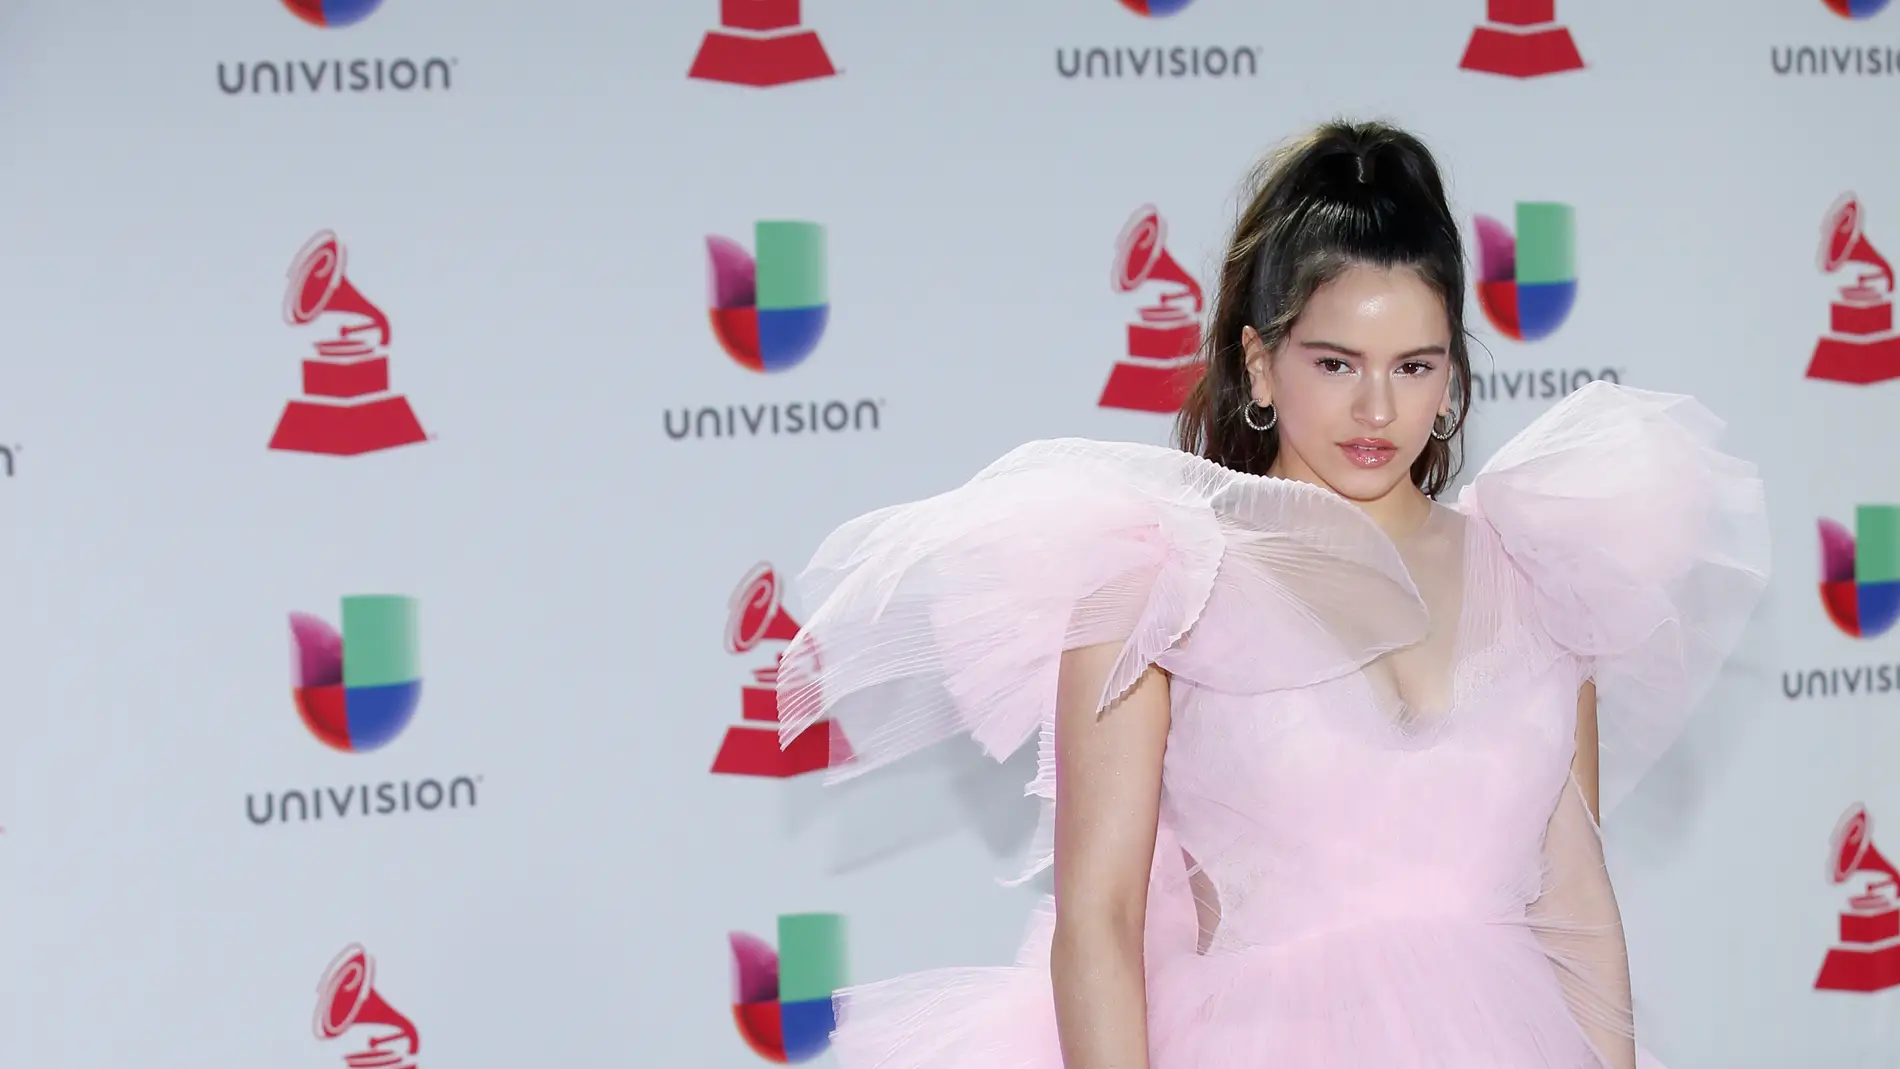 Rosalía deslumbra en la alfombra roja de los Grammy Latinos